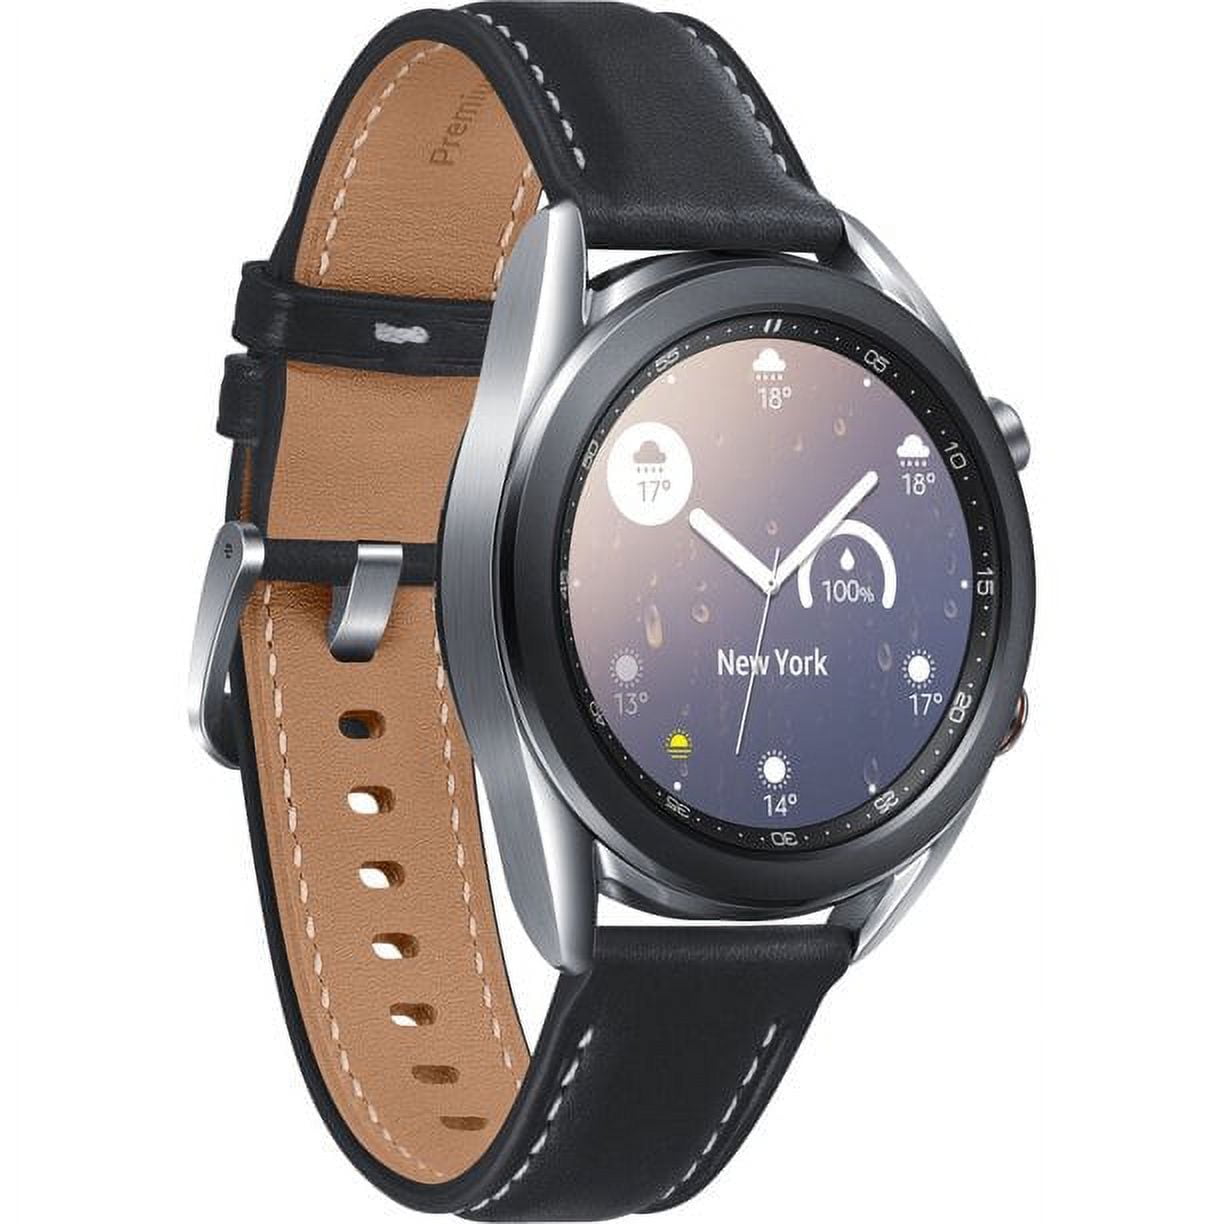 Restored Samsung - Galaxy Watch3 Smartwatch 41mm Stainless BT - Mystic  Silver SM-R850NZSAXAR (Refurbished)